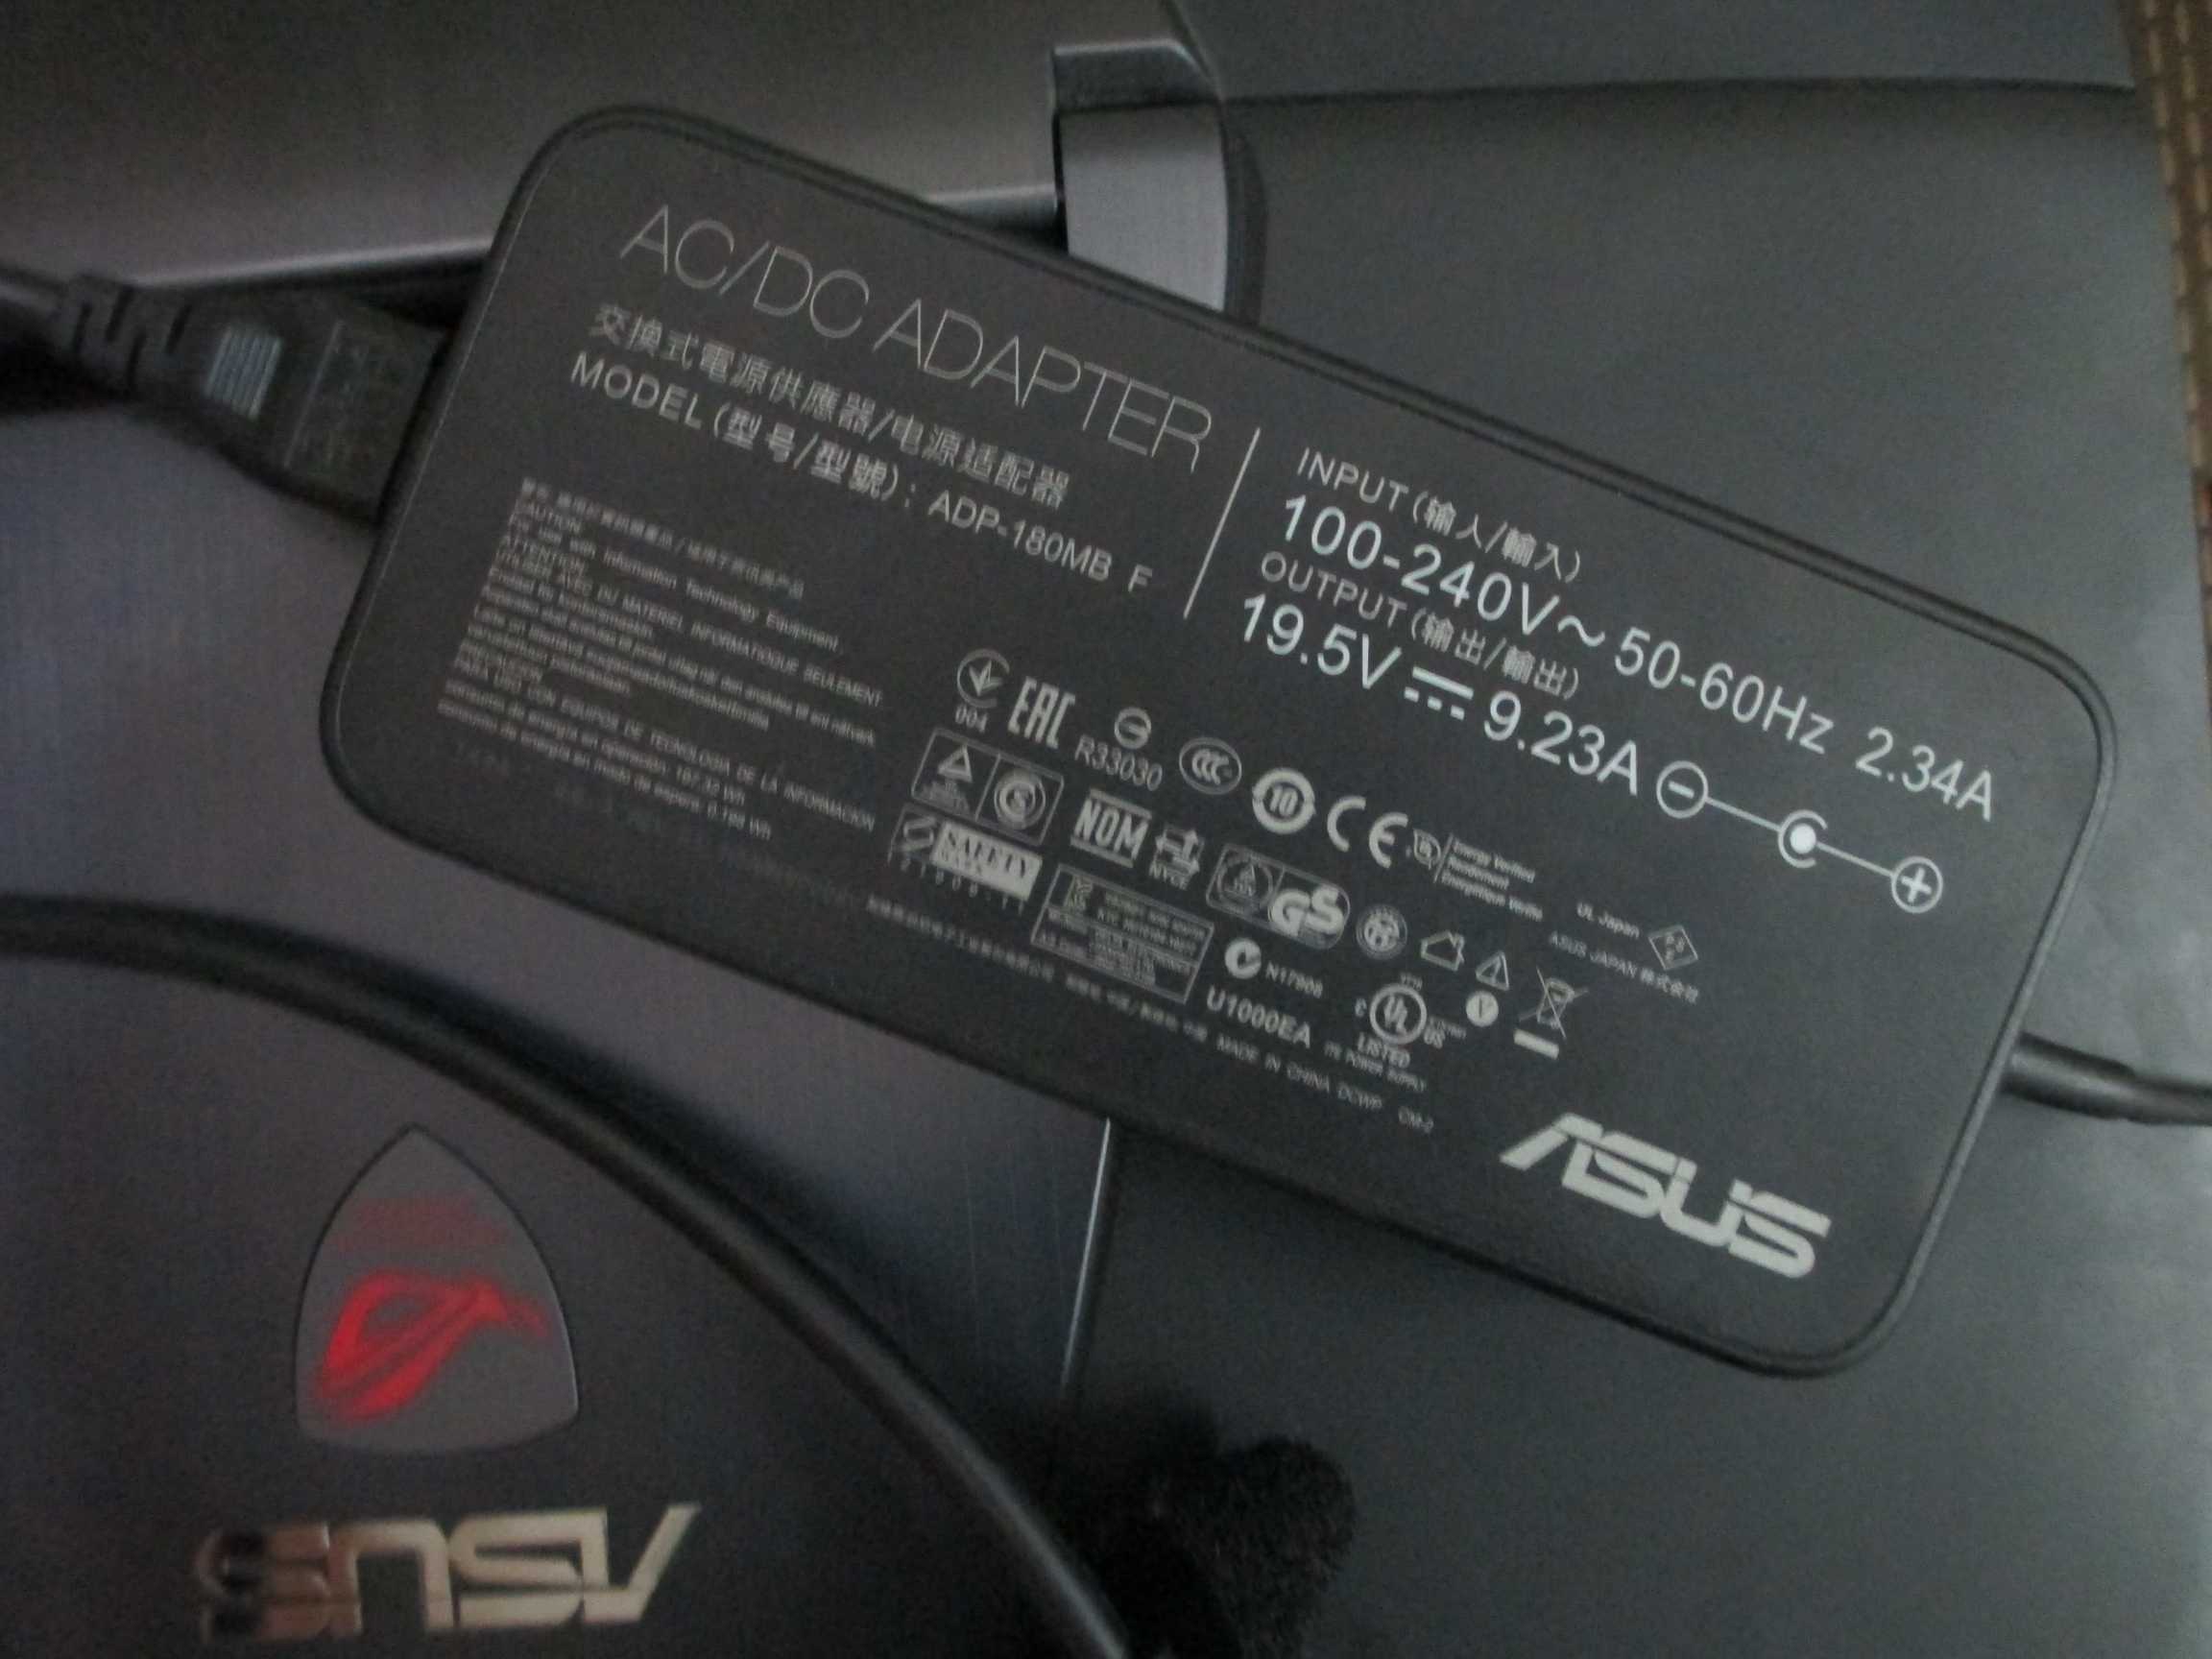 ASUS ROG G751 charging Adapter